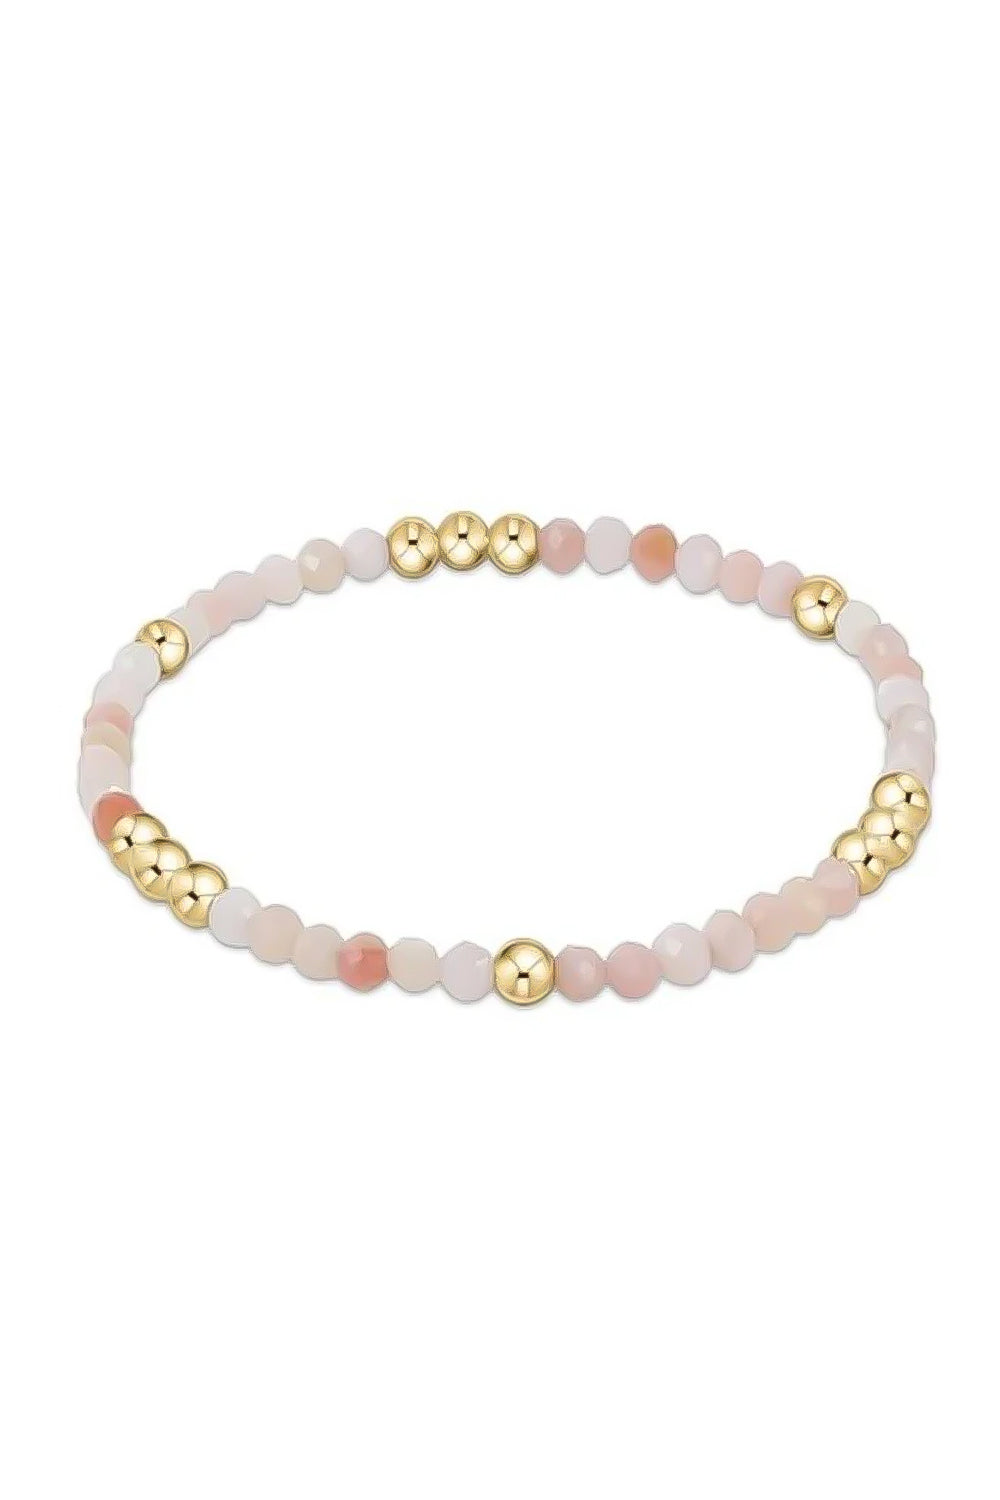 enewton: Worthy Pattern 3mm Bead Bracelet - Pink Opal | Makk Fashions